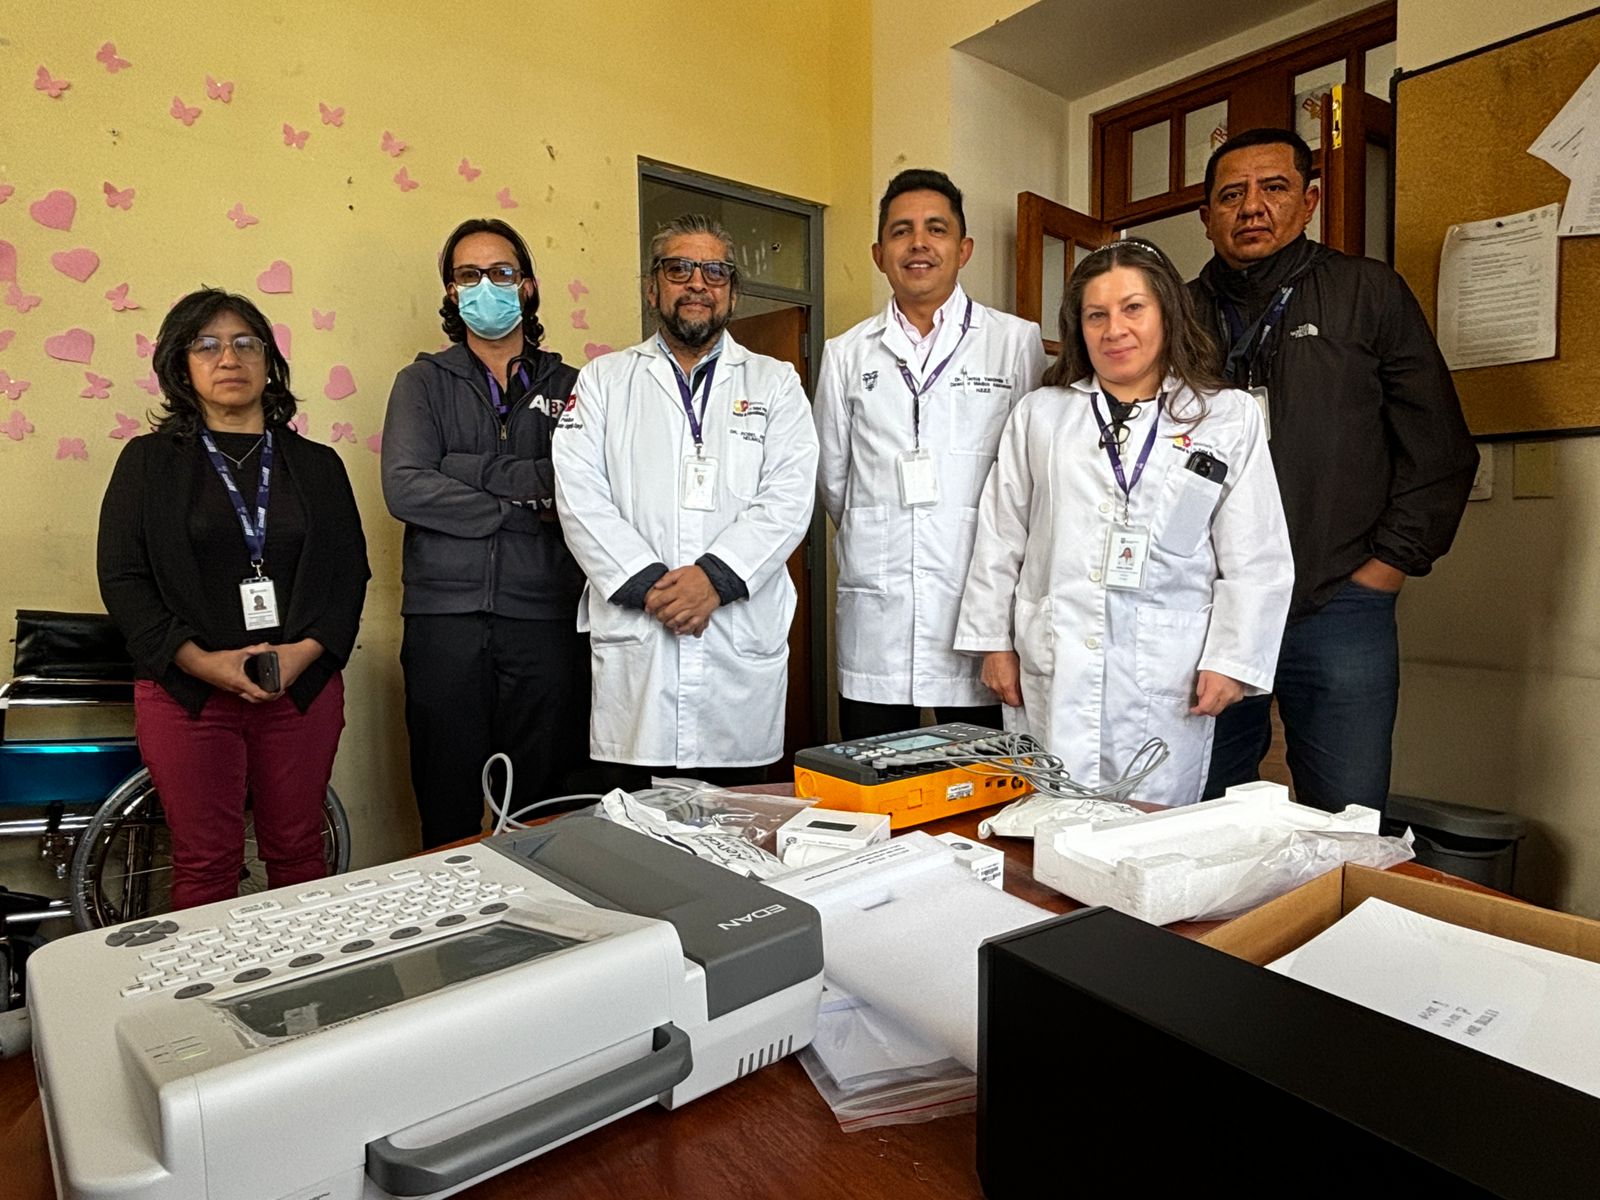 Tecnología de Vanguardia: Nuevo Electrocardiógrafo Impulsa Atención Médica en Hospital Eugenio Espejo